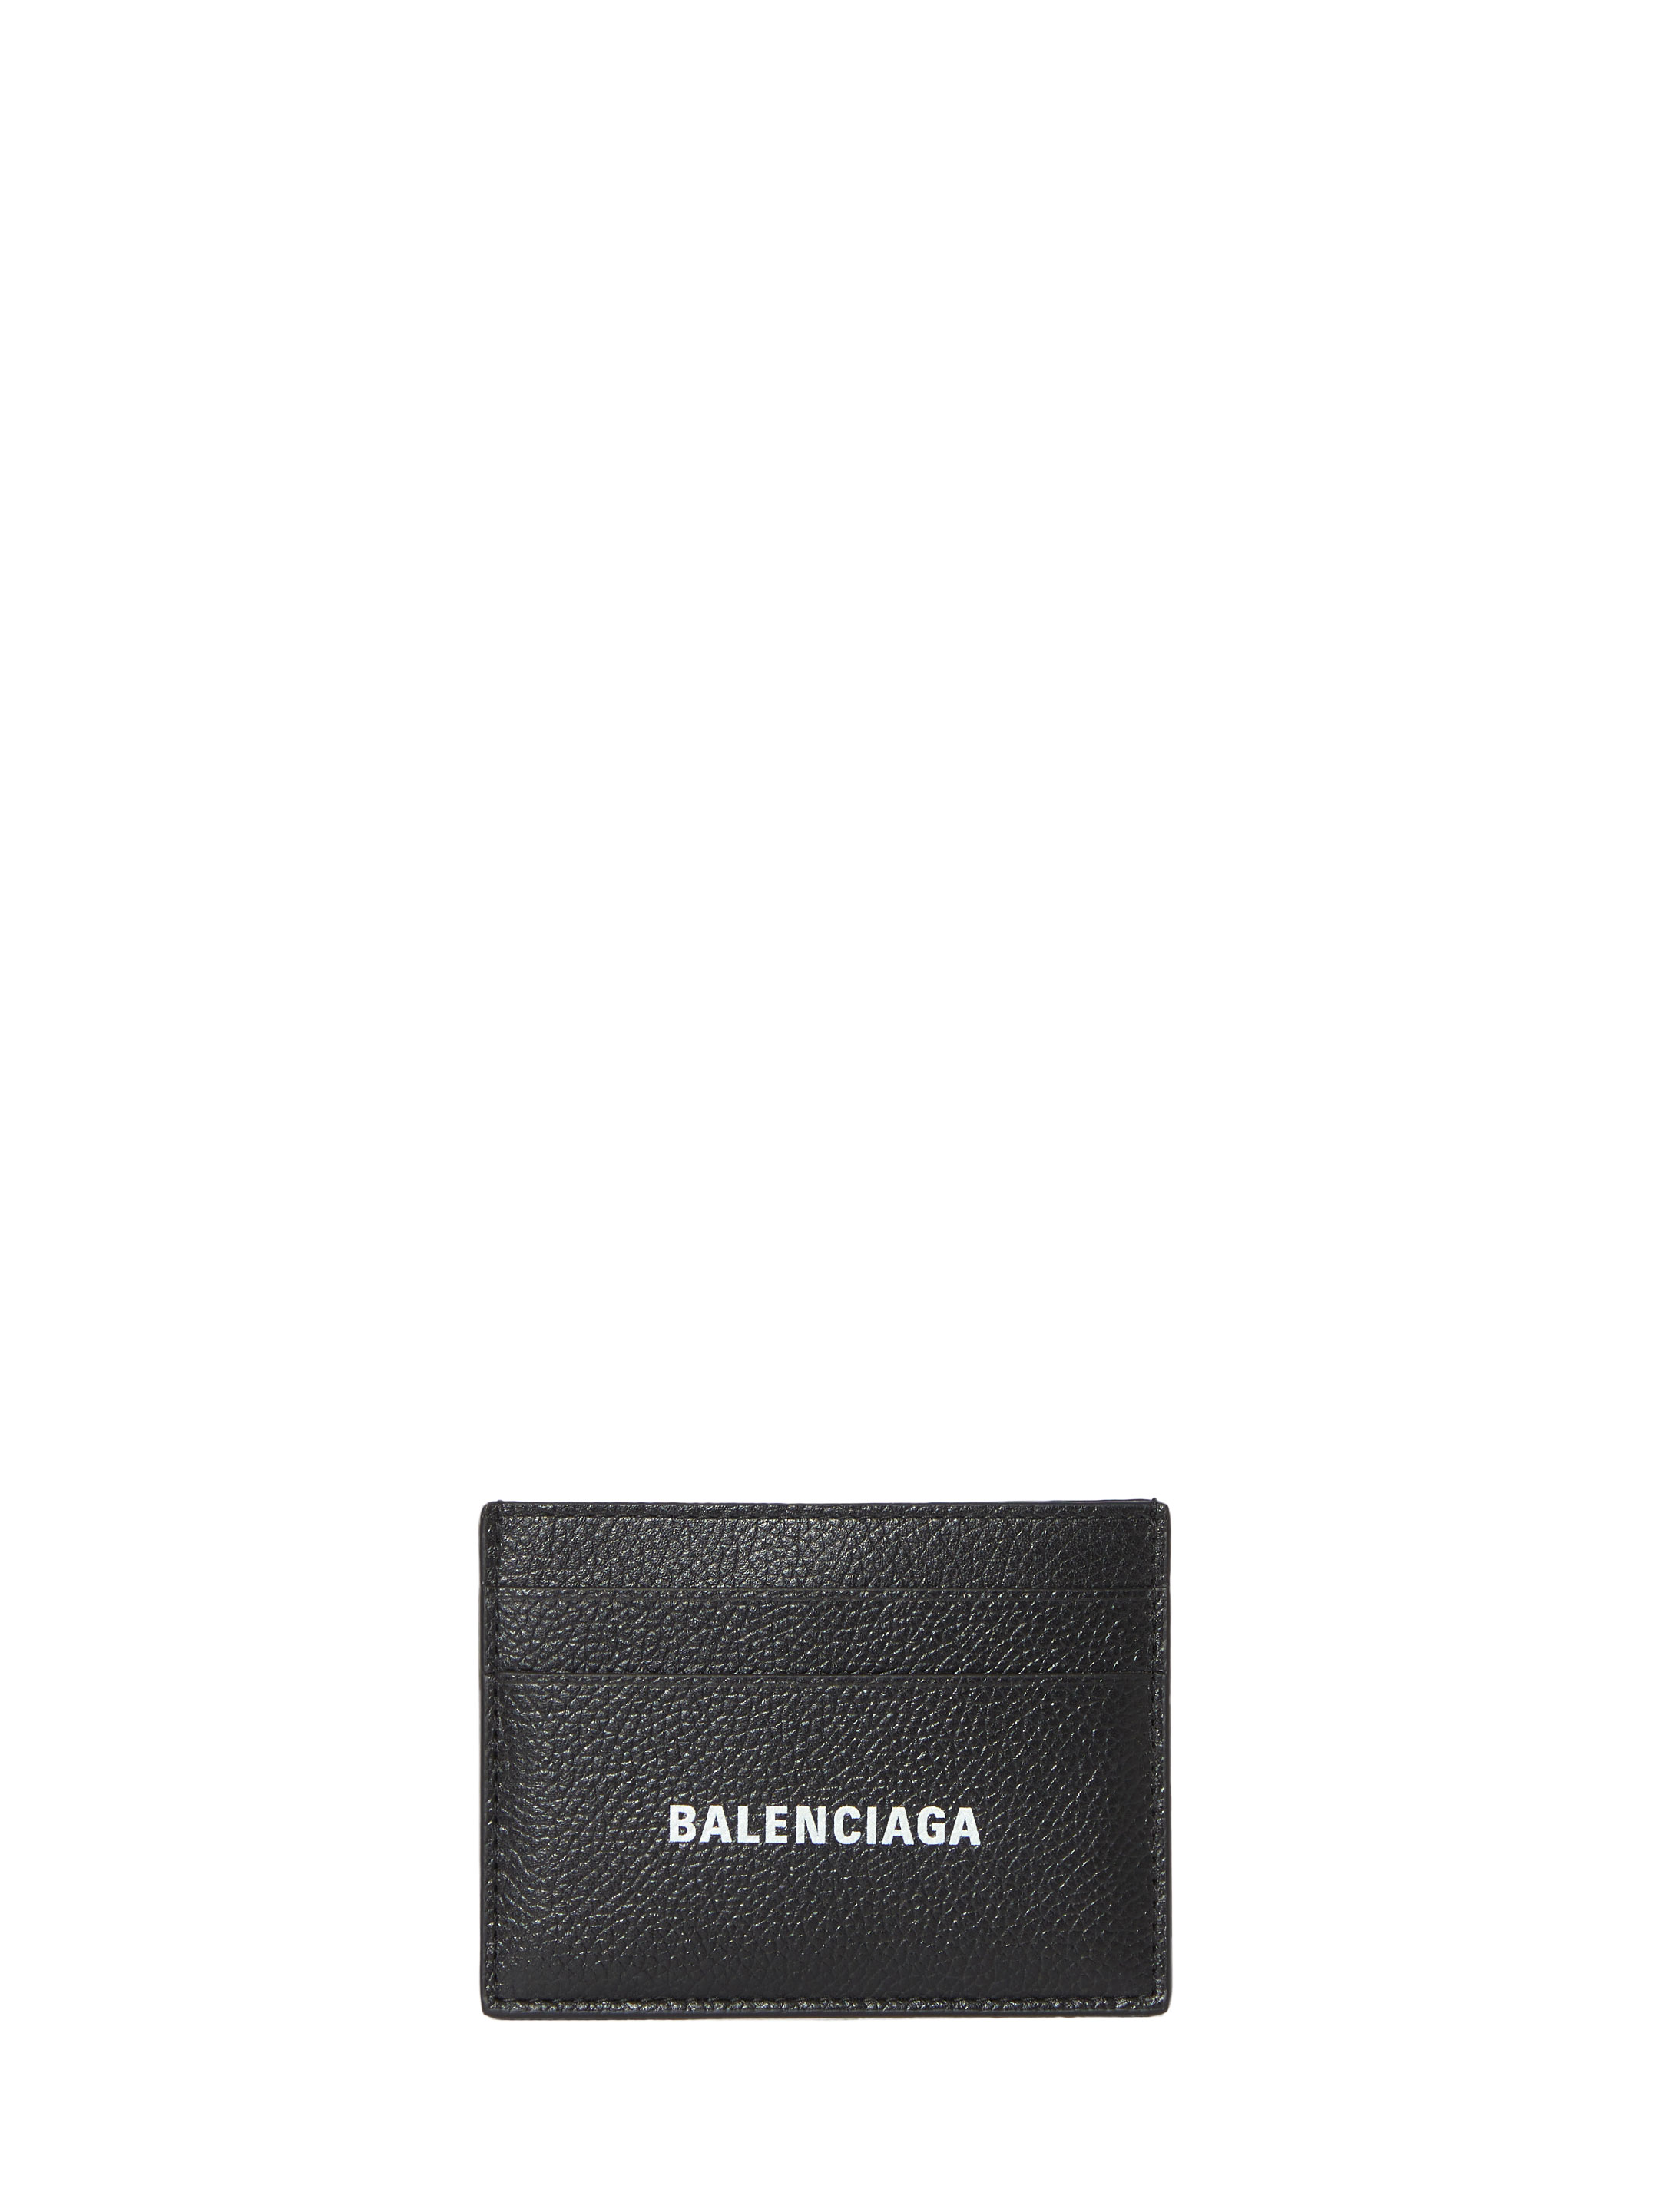 Картхолдер Balenciaga Cash, черный чехол панель накладка mypads для samsung galaxy a41 sm a415f 2020 из качественной импортной кожи с визитницей с отделением для банковских карт